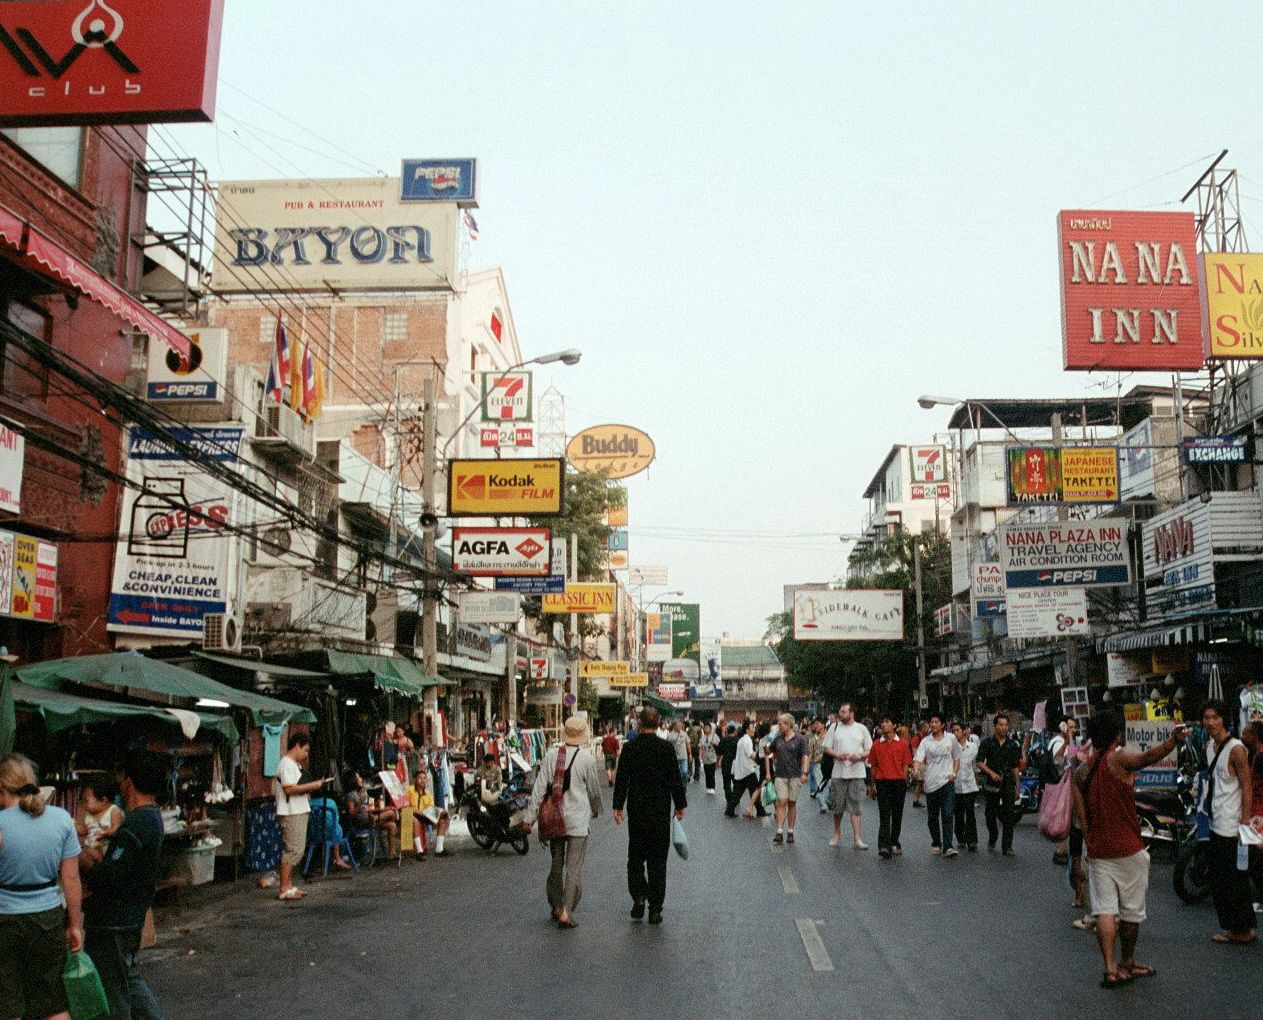 Khaosan Road, bangkok Thailand  - March 2003